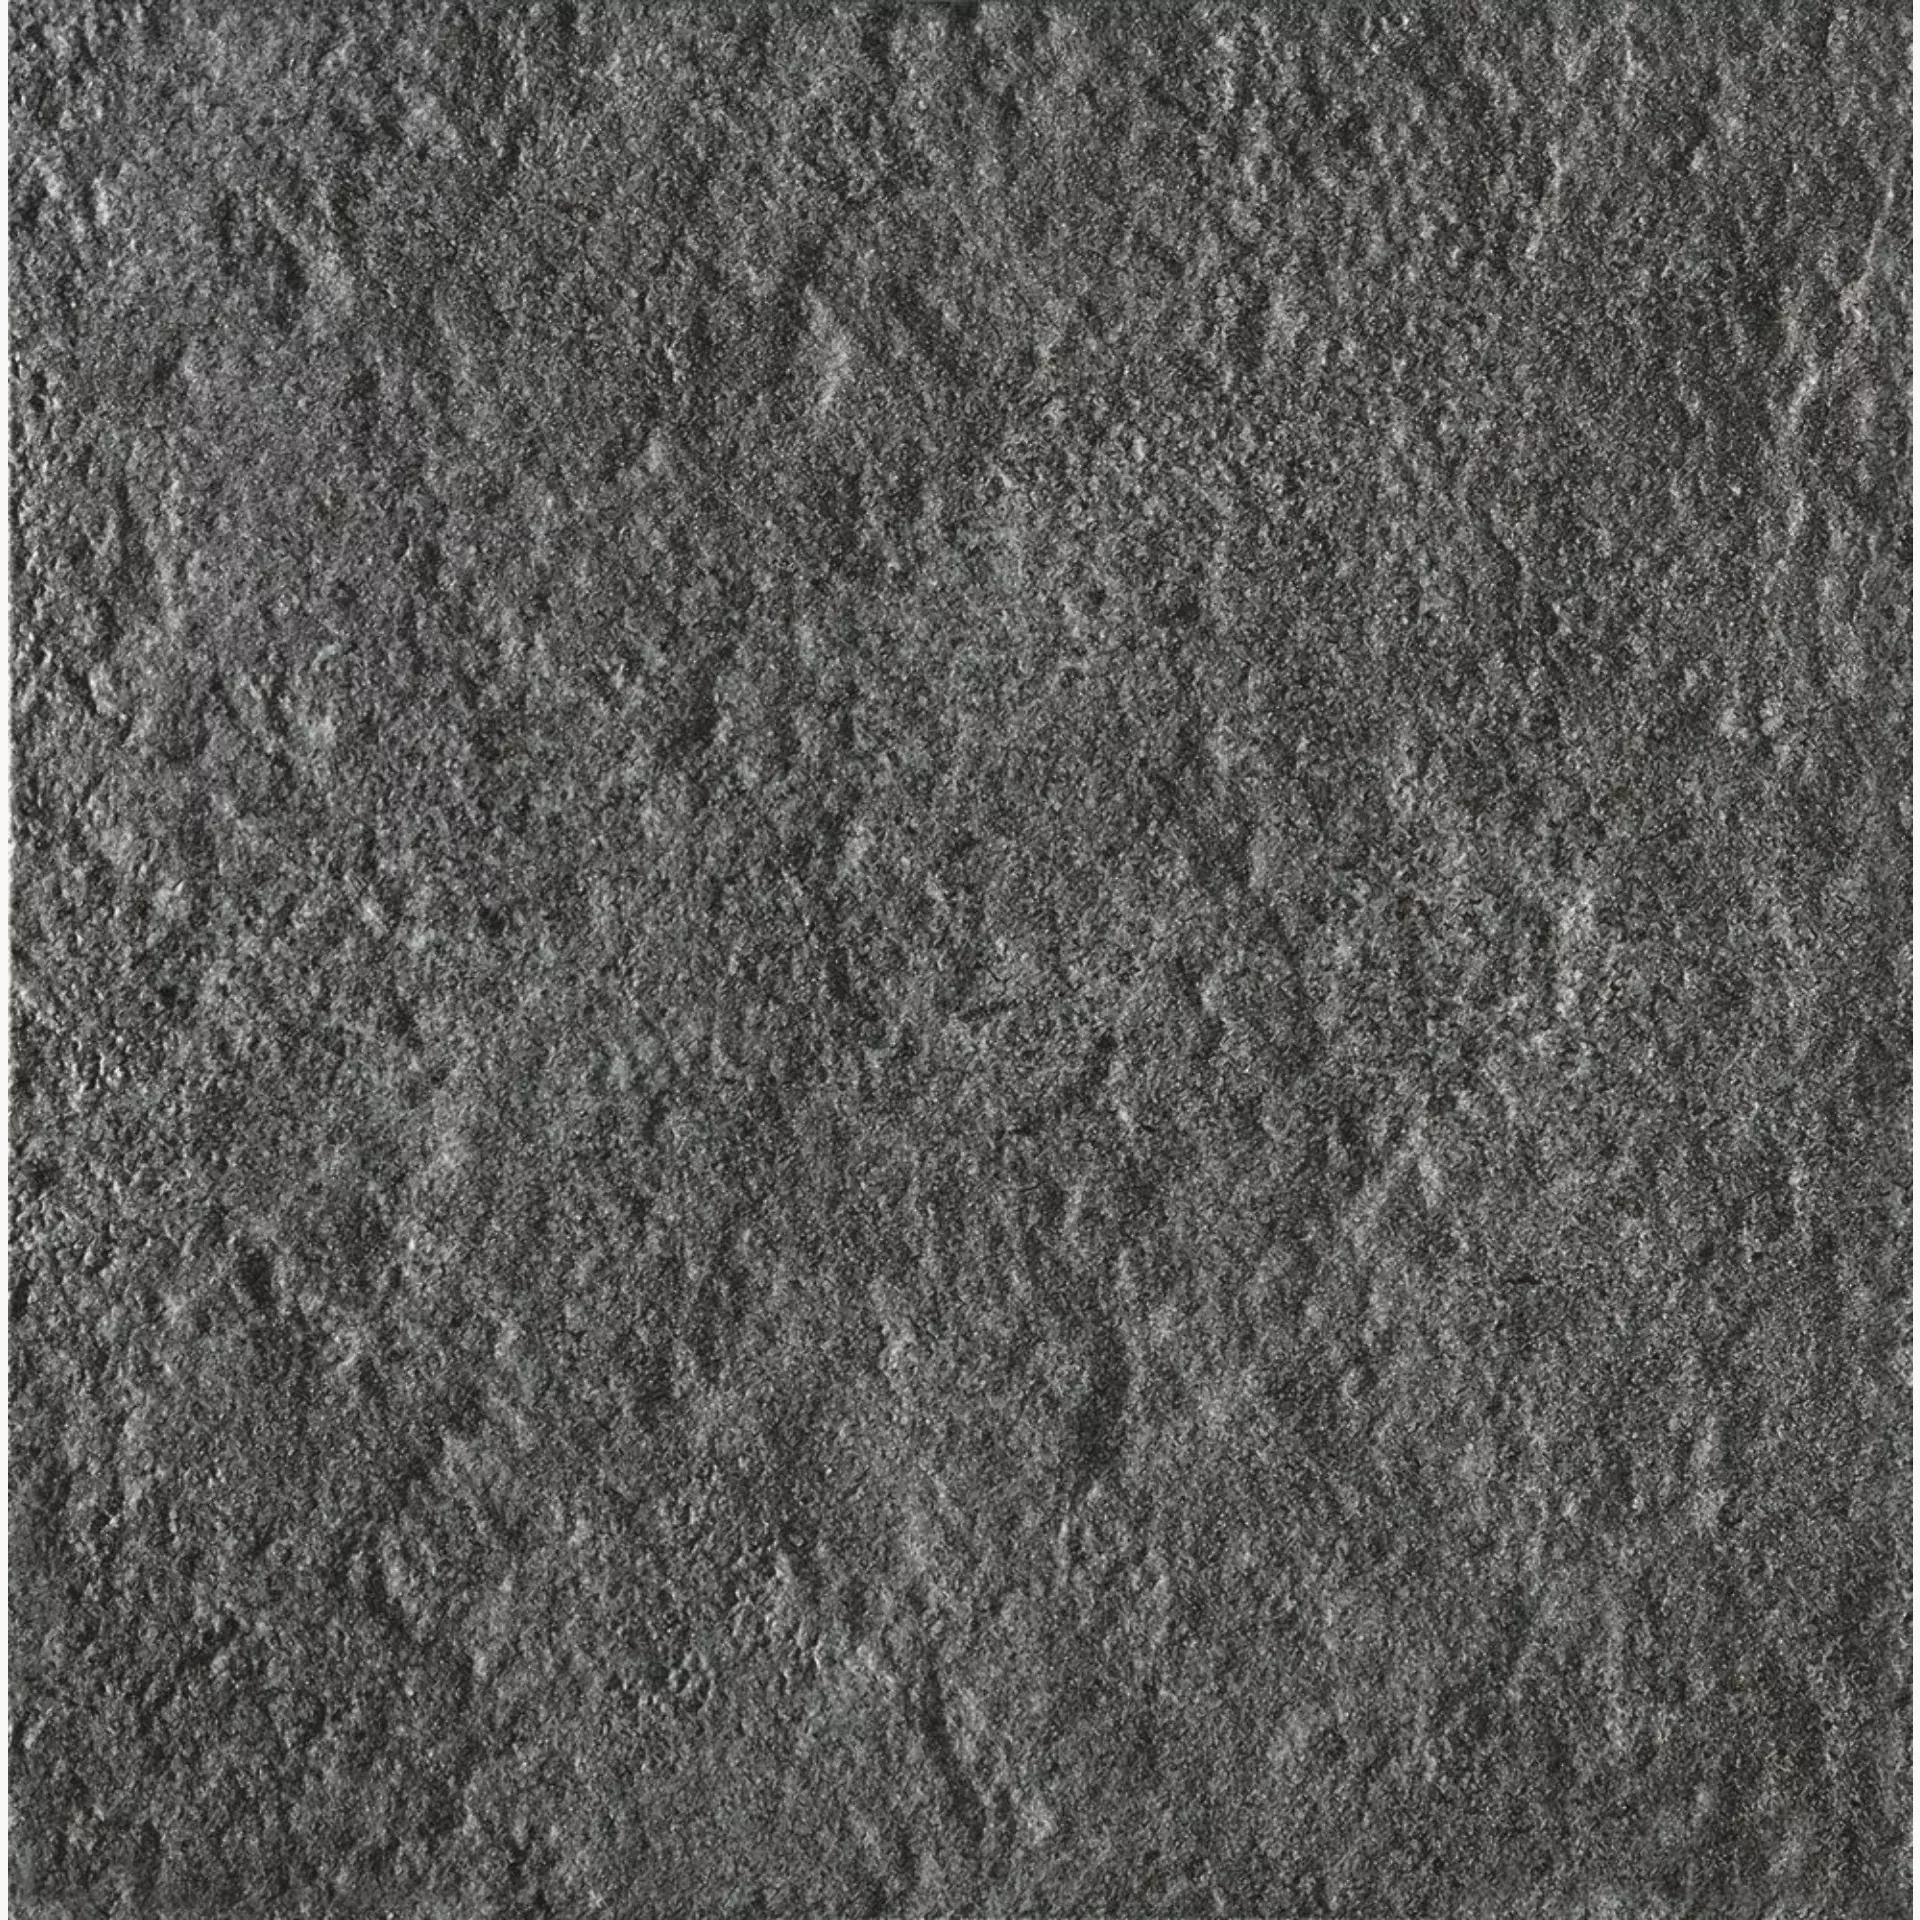 Bodenfliese,Wandfliese Marazzi Stonework Anthracite Strutturato Anthracite MLHY strukturiert 33,3x33,3cm 8mm